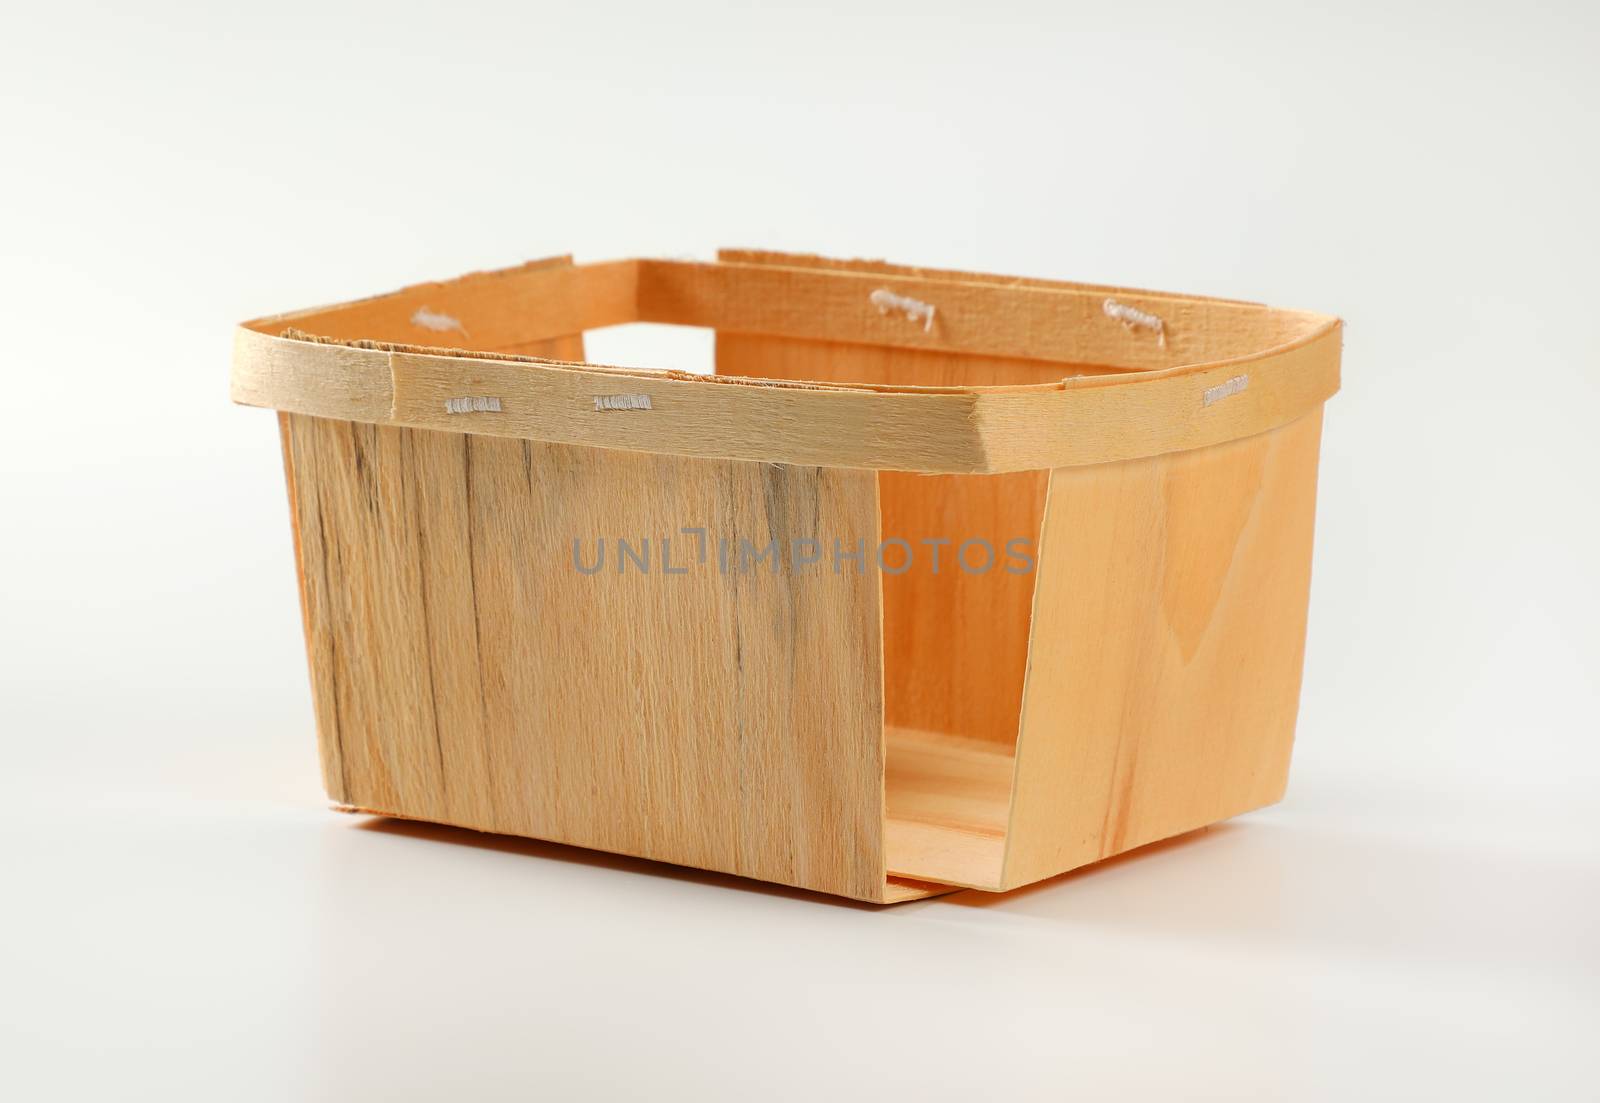 Empty wooden berry basket by Digifoodstock